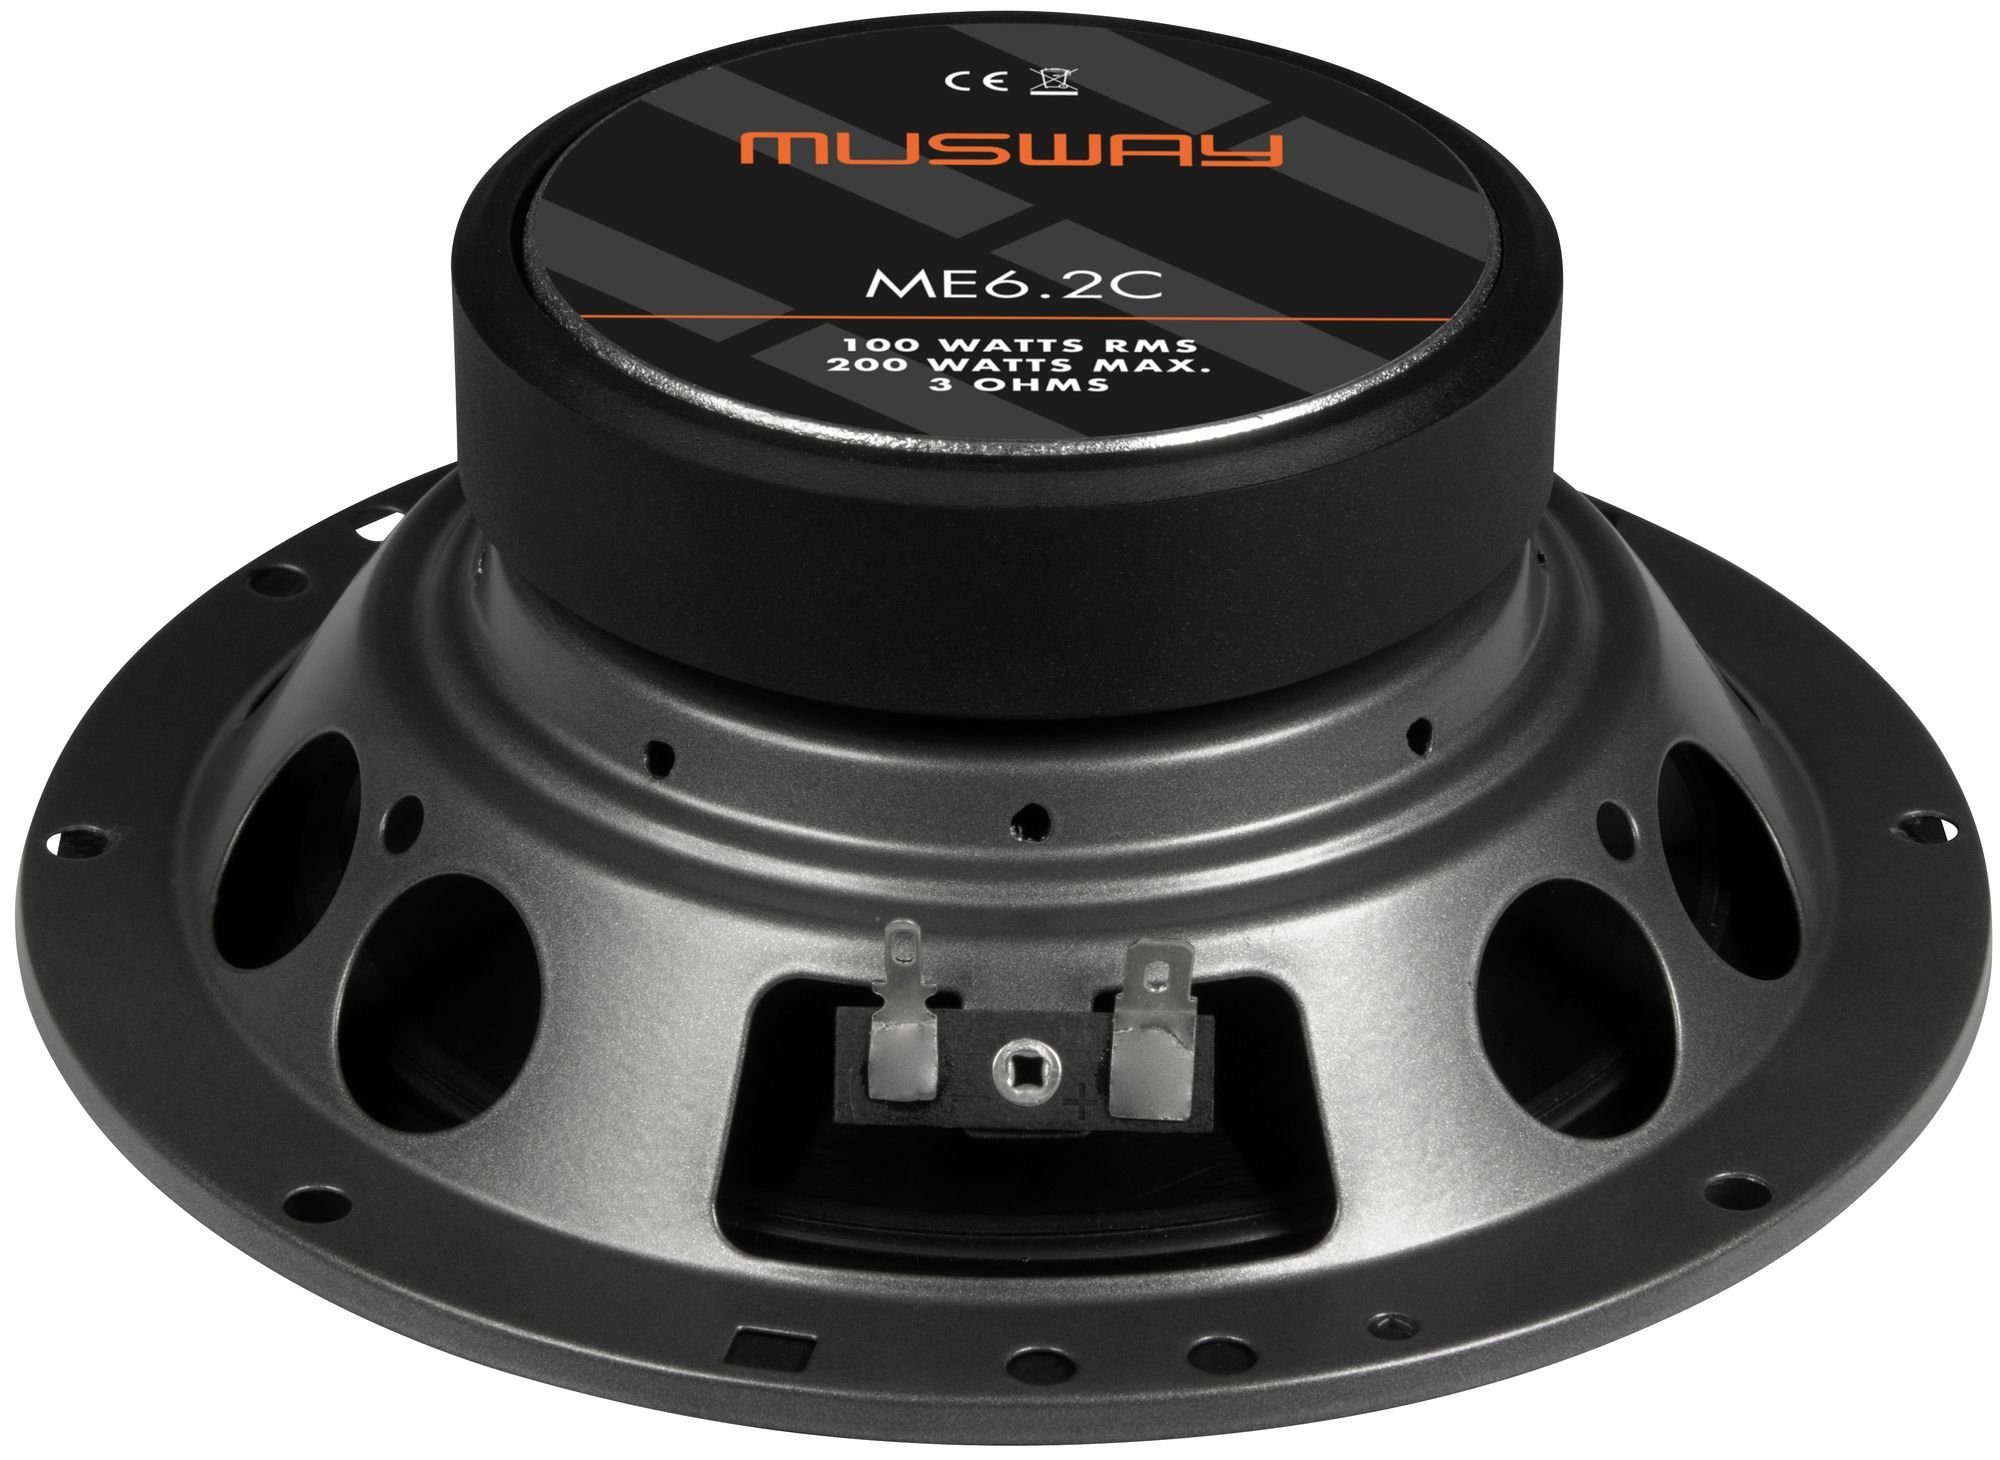 Musway 16,5cm ME6.2C ME6.2C - System) - (Musway Auto-Lautsprecher Lautsprecher System Lautsprecher Musway 16,5cm